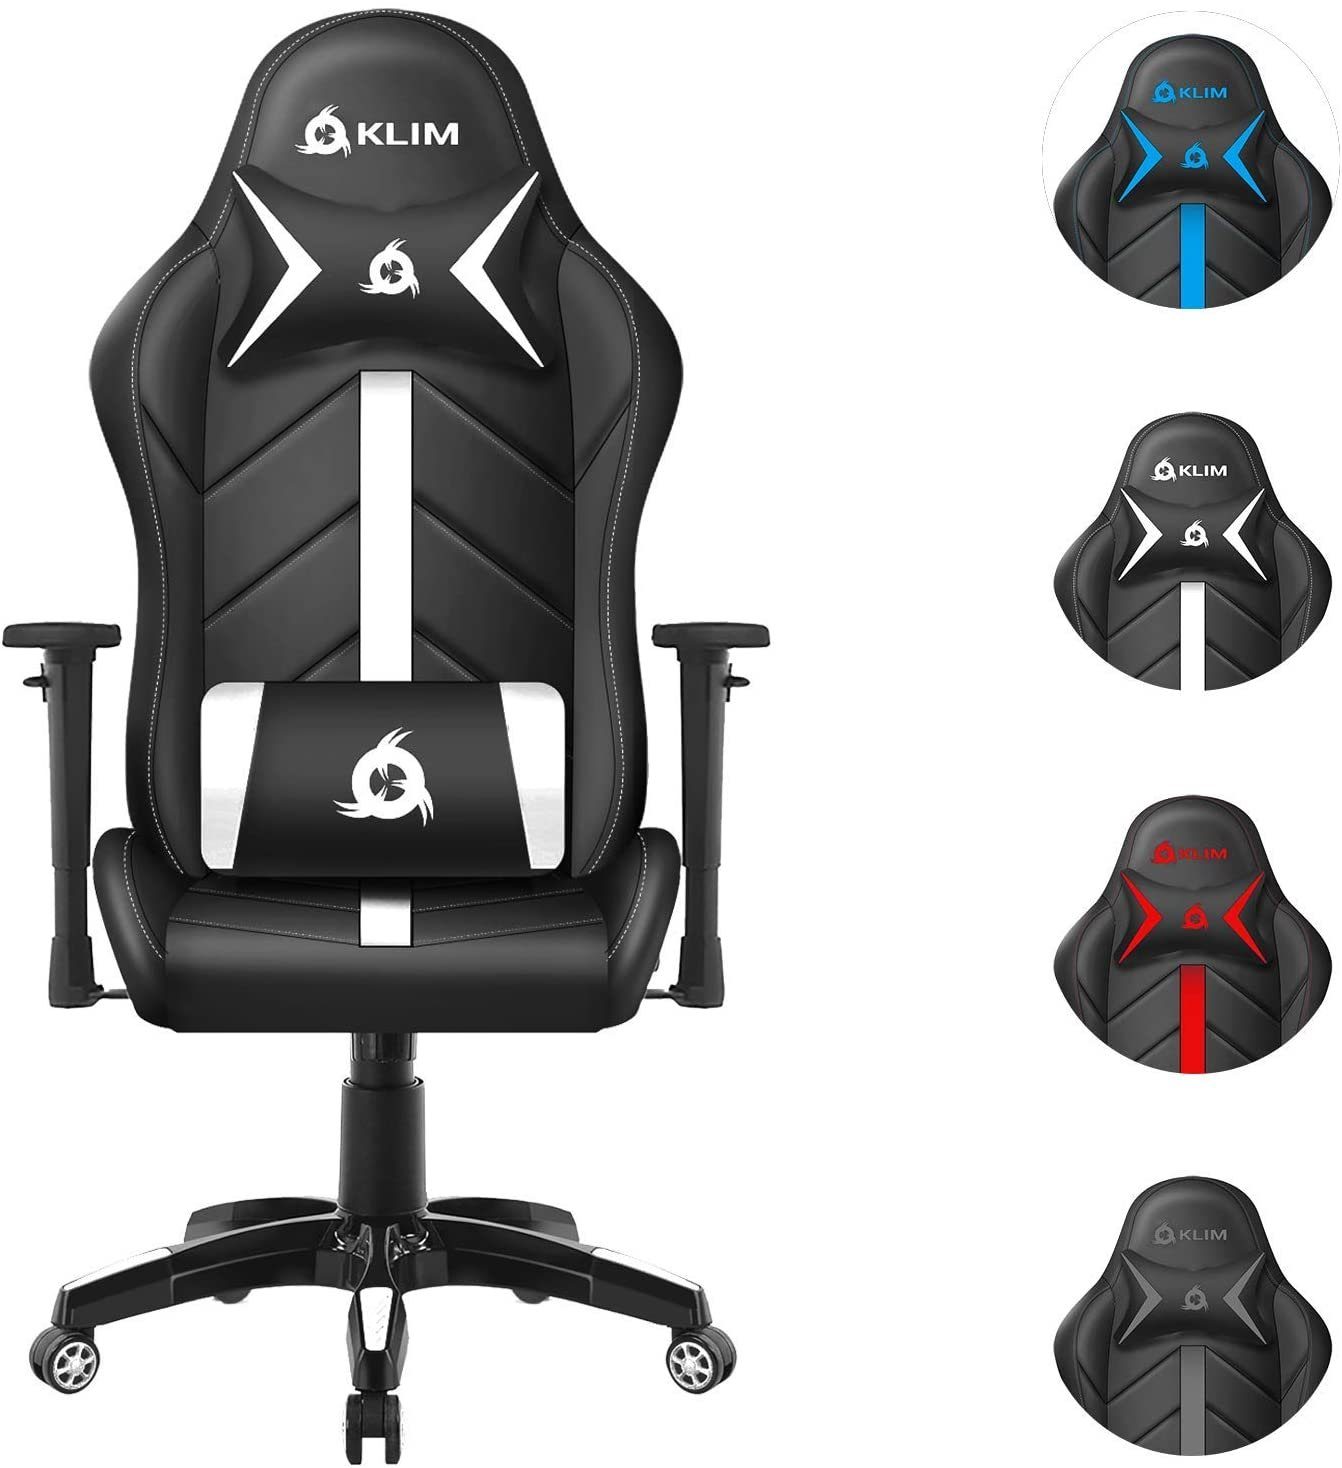 KLIM Gaming-Stuhl 1st Gaming Stuhl, Ergonomischer Sitzmöglichkeit, Hochwertige Qualität, Stylischer Stuhl fürs Gaming